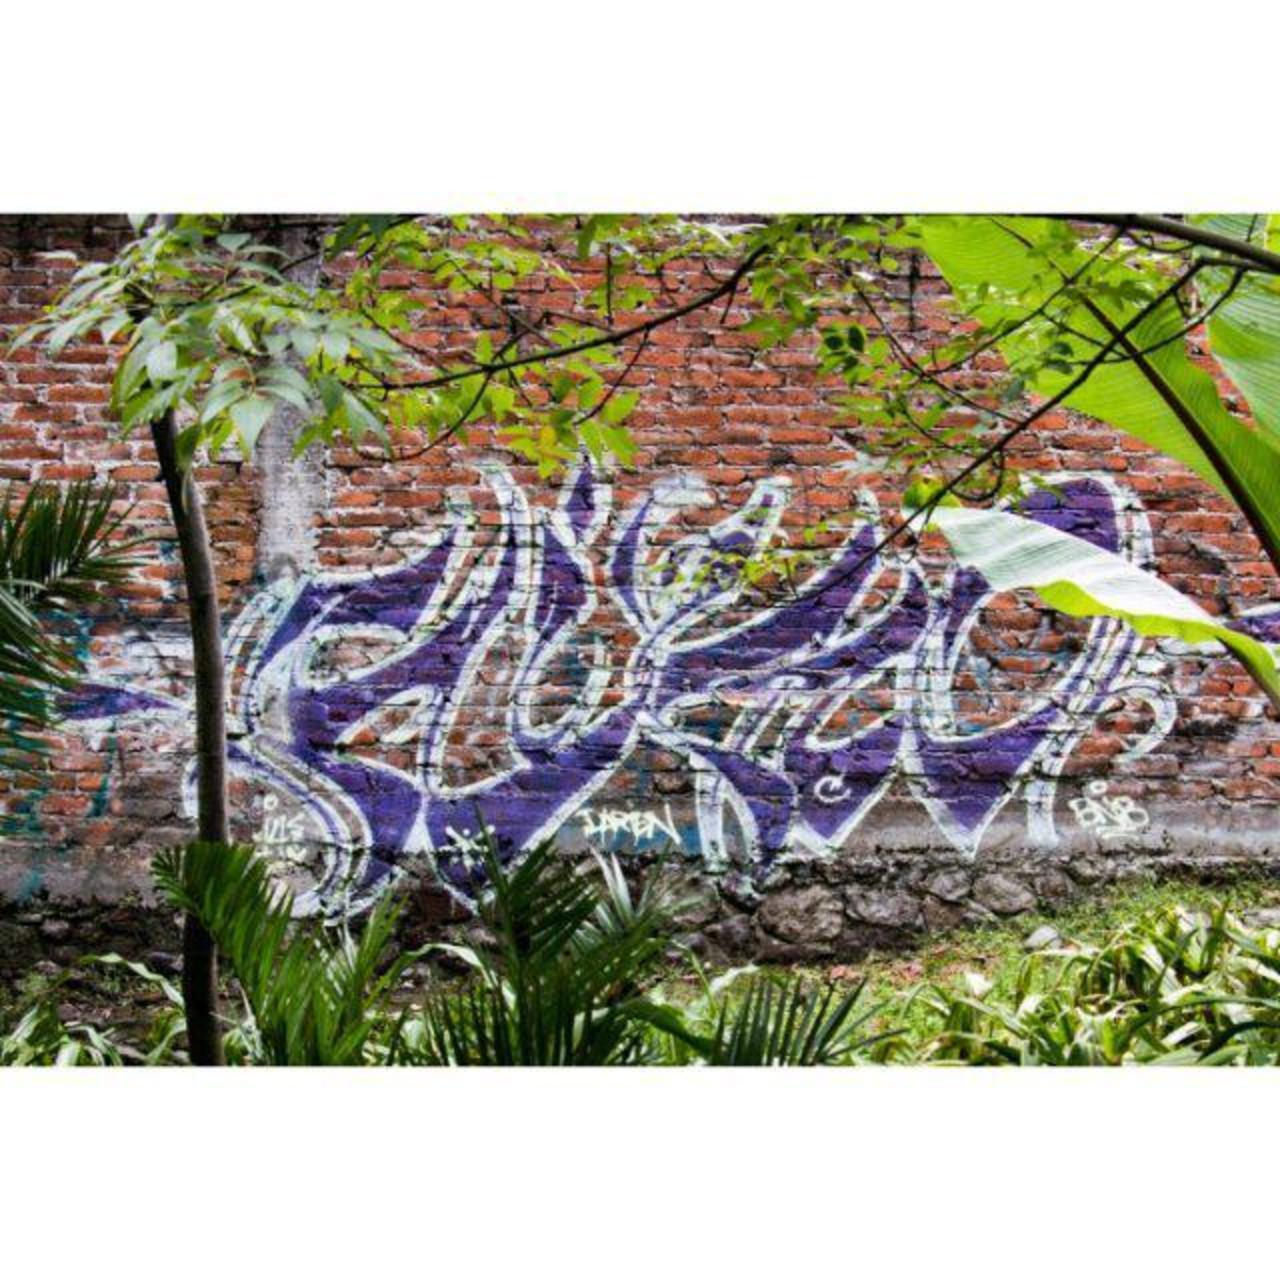 RT @artpushr: via #gongrrr "http://bit.ly/1j80HFB" #graffiti #streetart http://t.co/ANUjMT8p5s